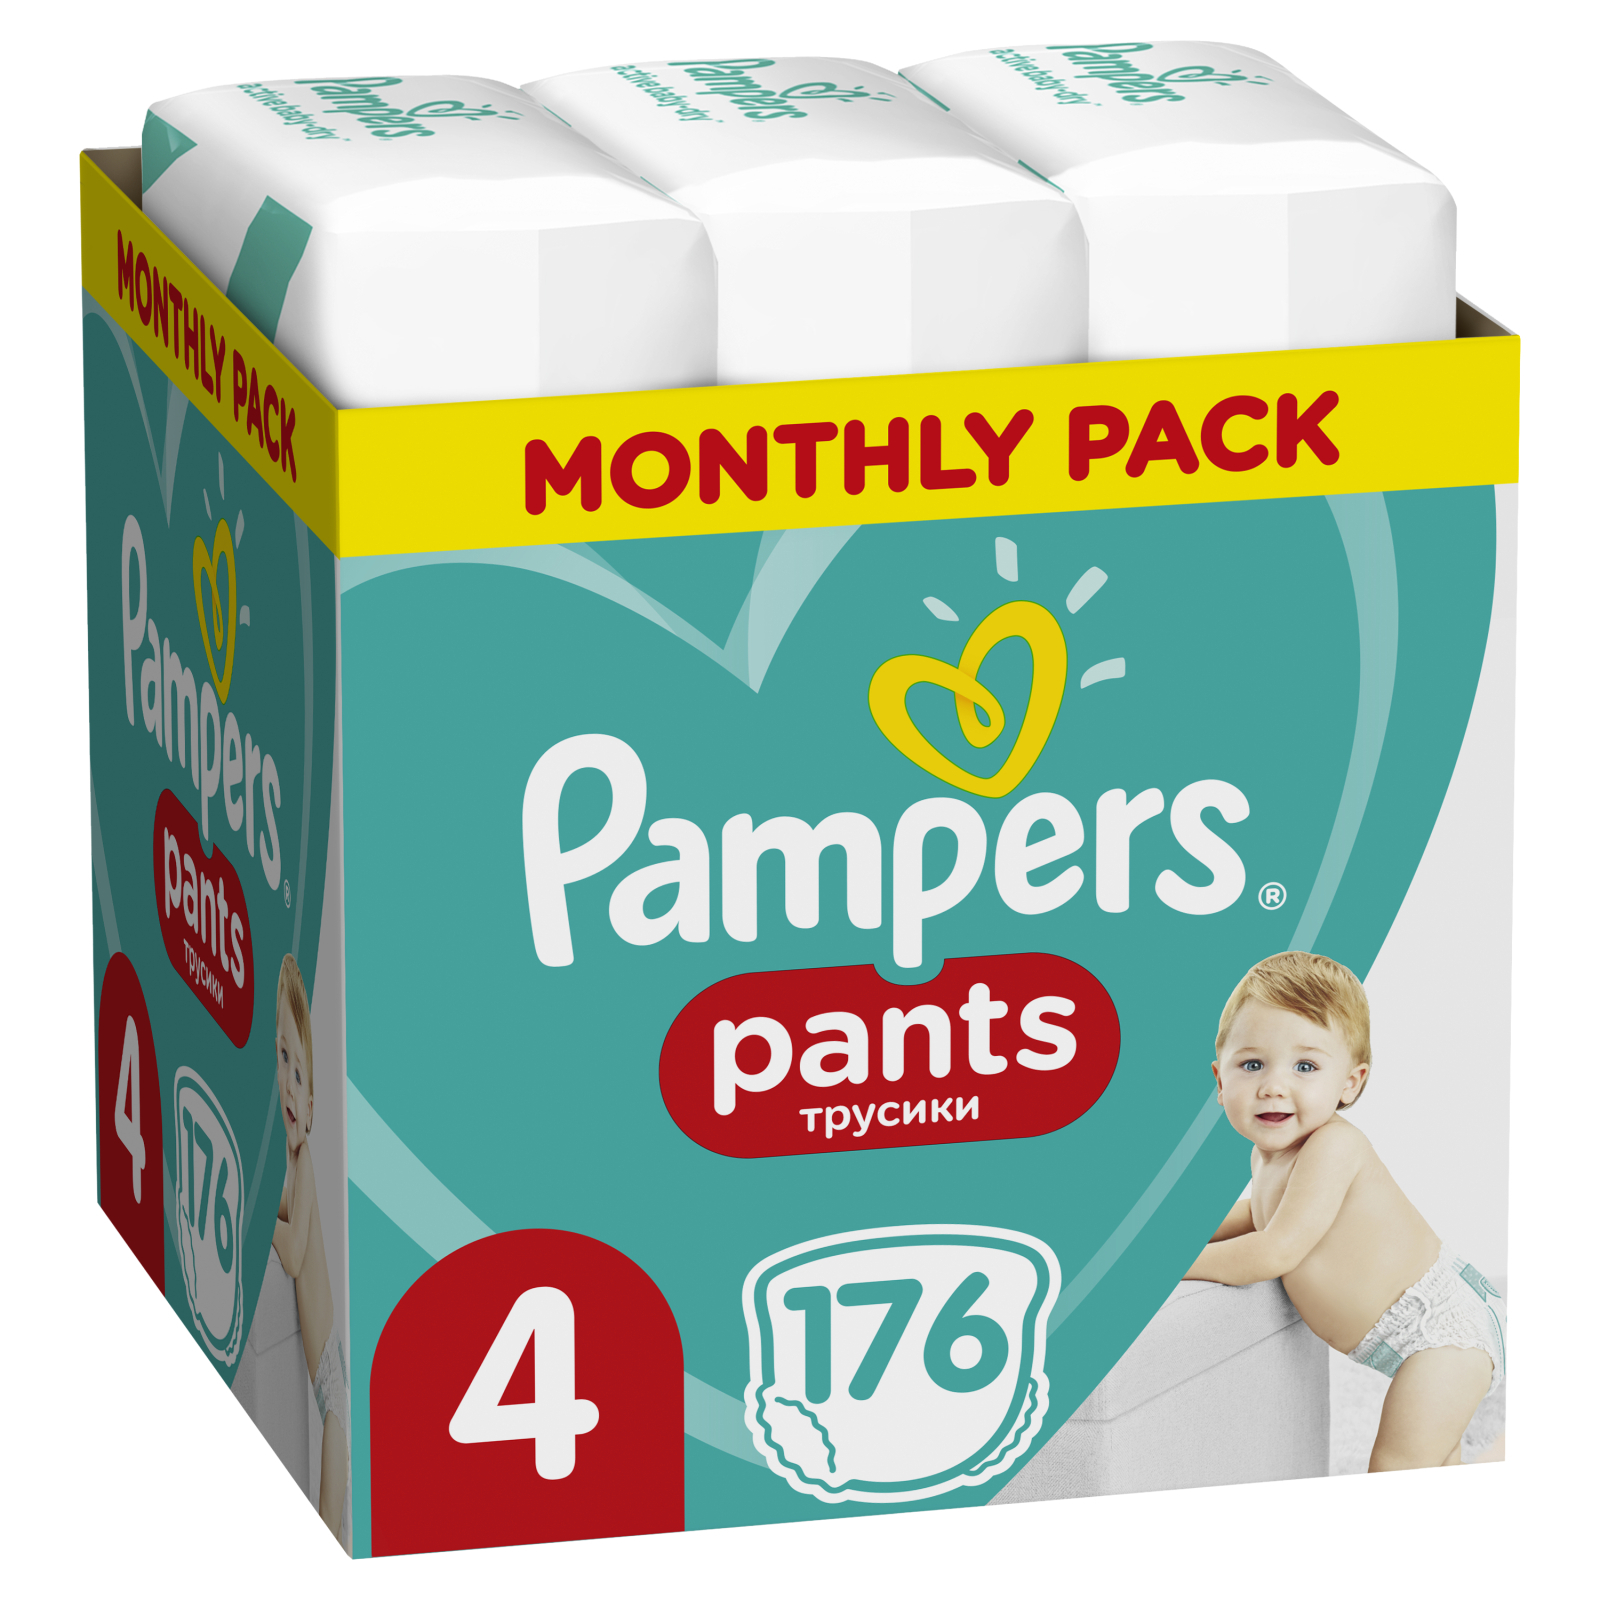 Подгузники Pampers трусики Pants Maxi Размер 4 (9-15 кг), 176 шт (8001090807922) изображение 2